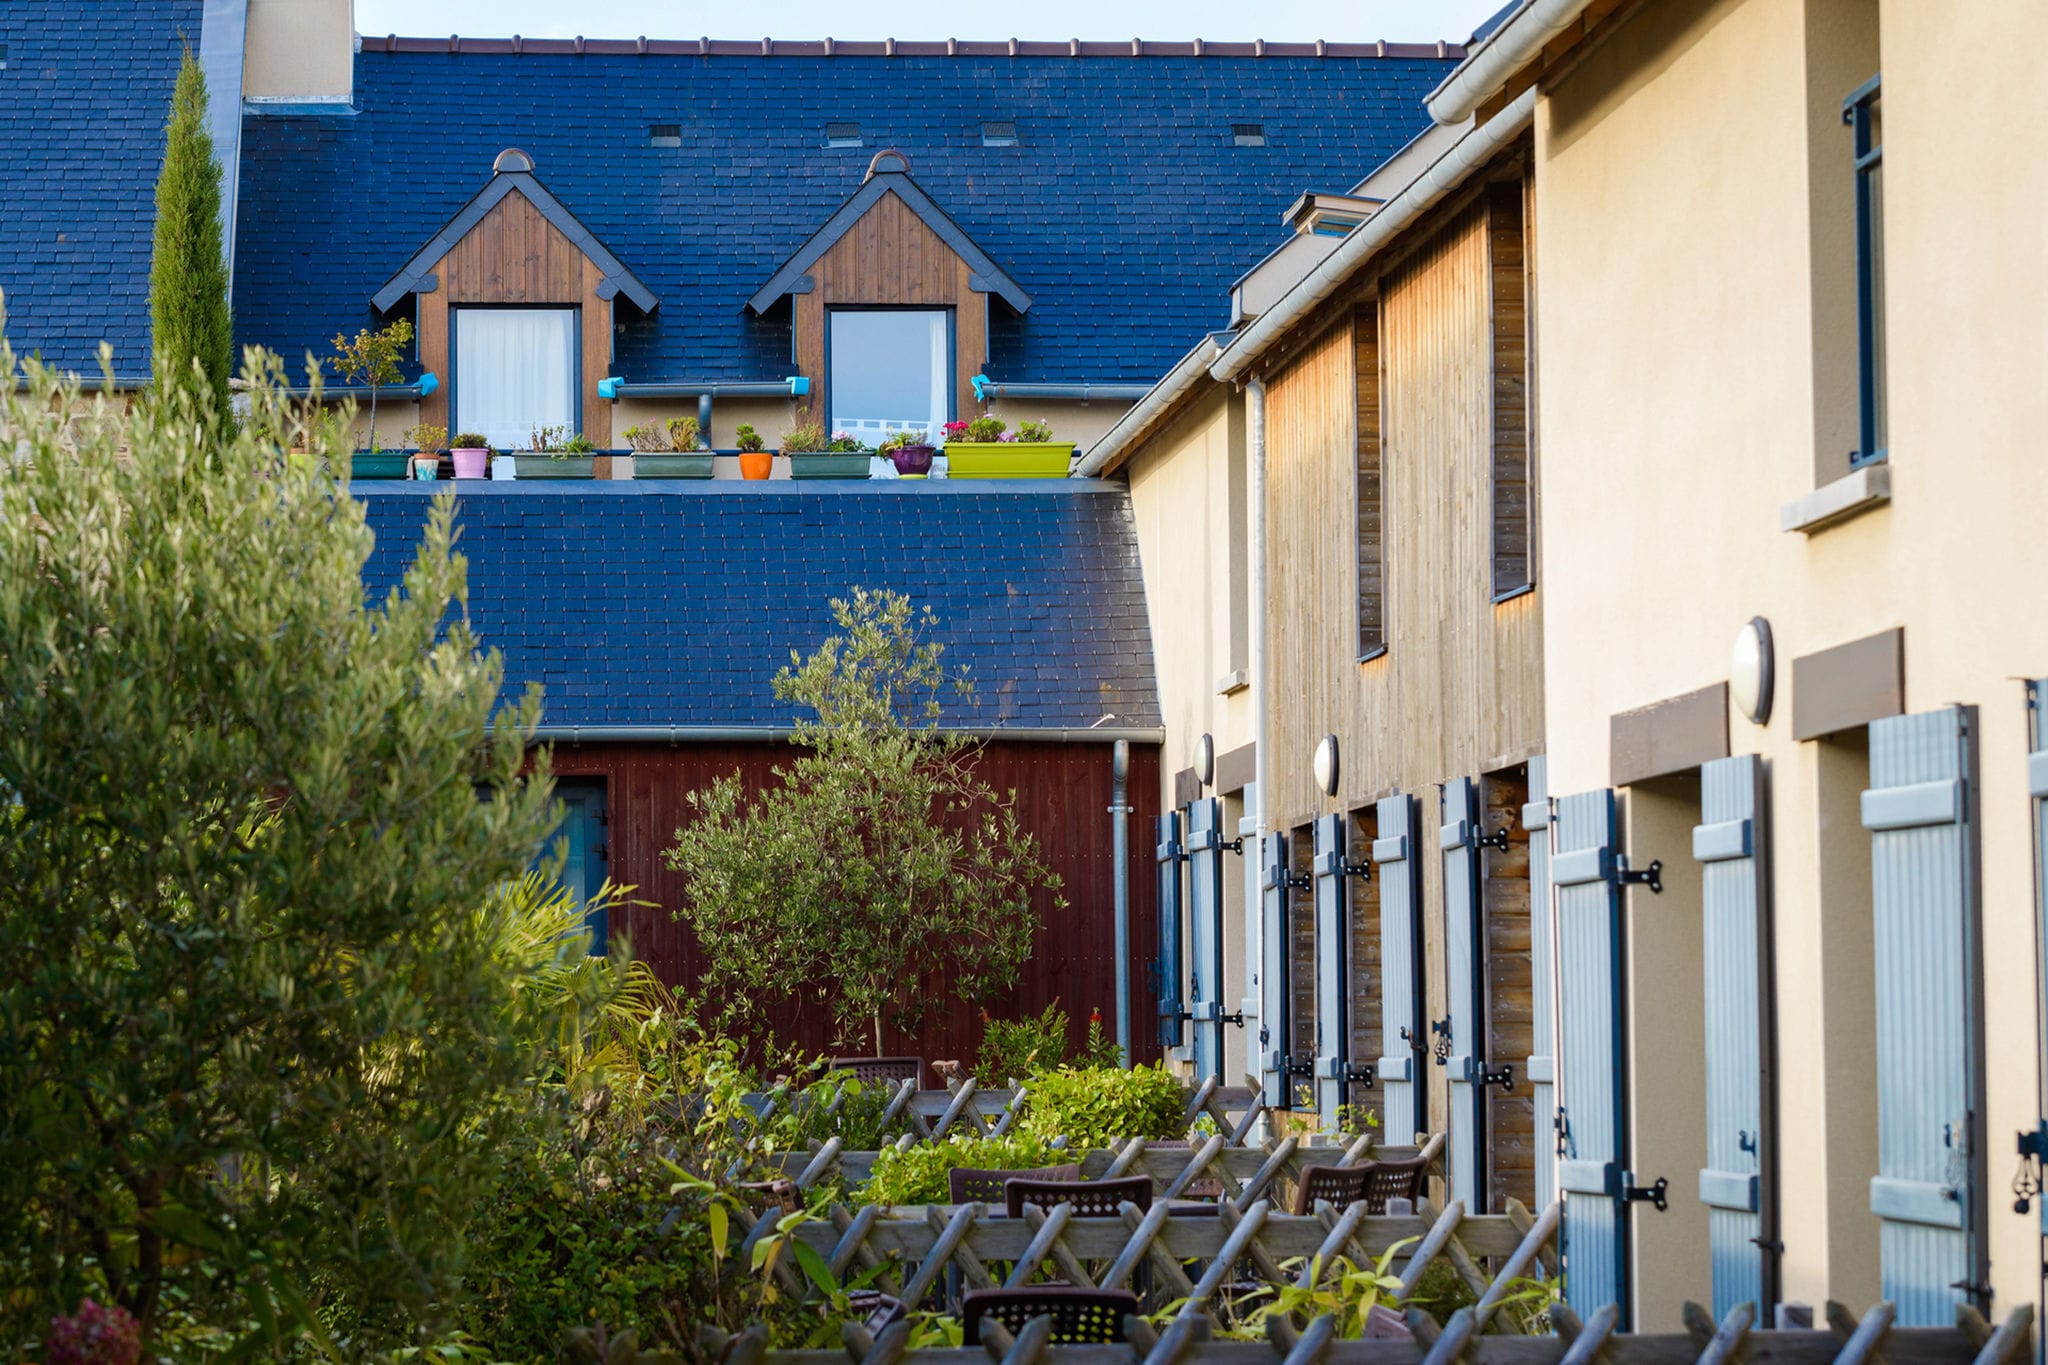 Belle maison de vacances près d'un village ostréicole breton